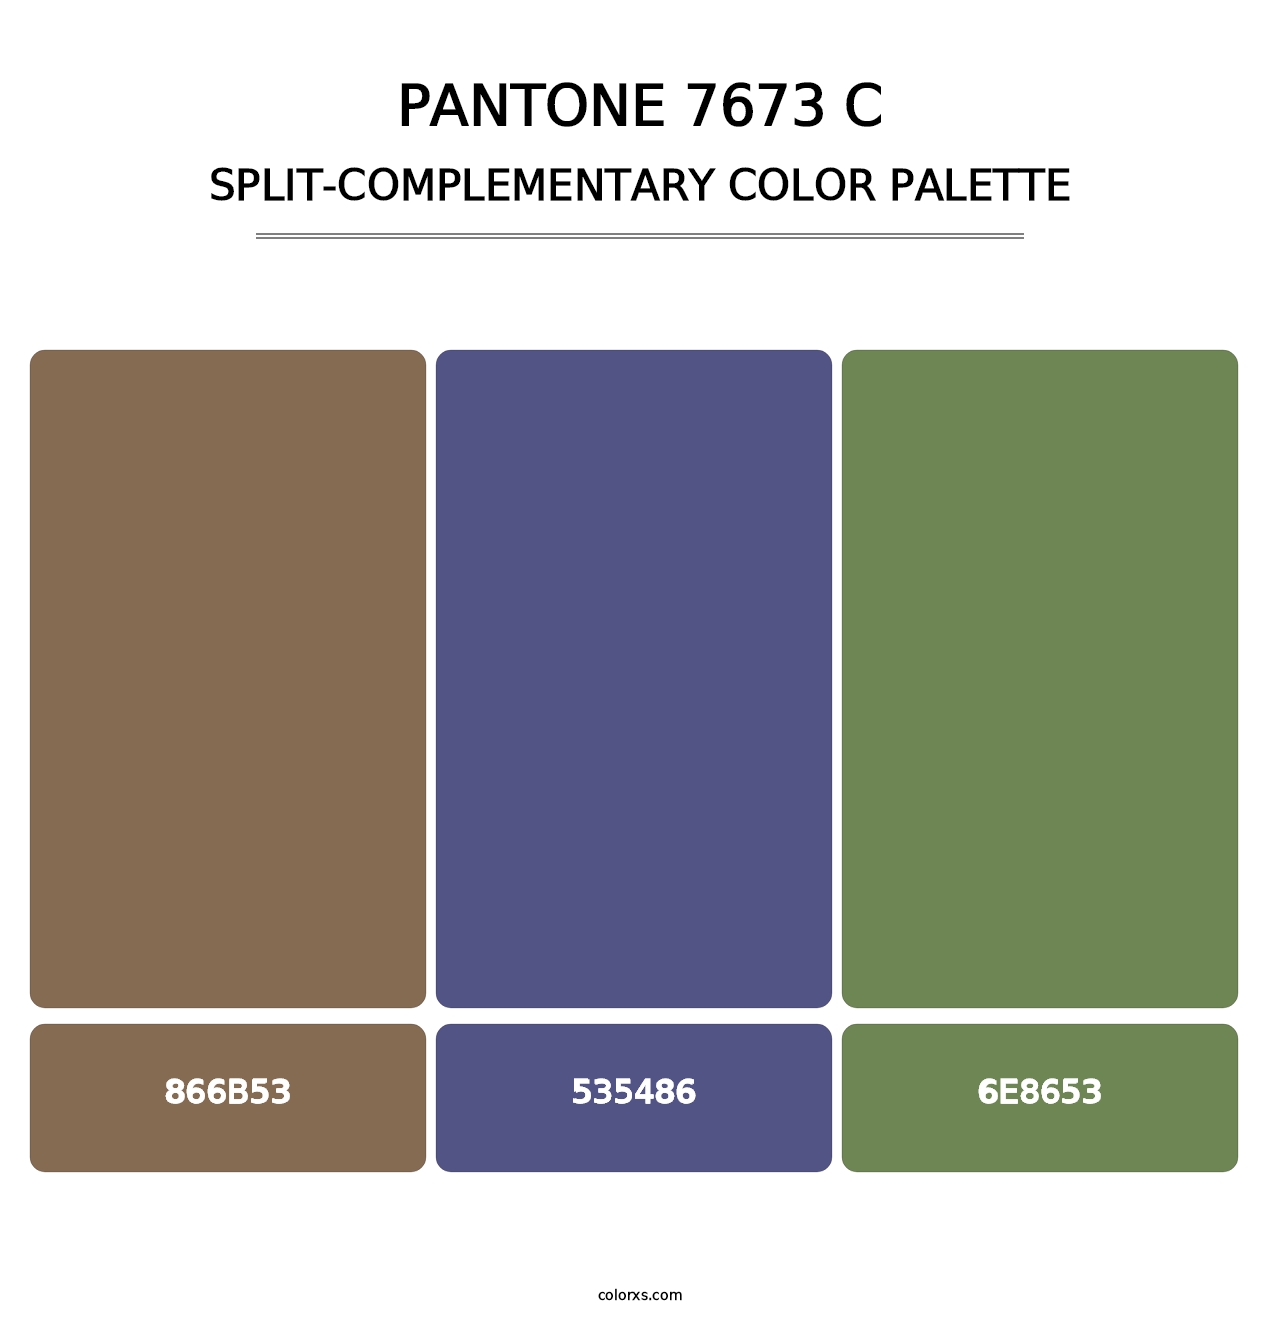 PANTONE 7673 C - Split-Complementary Color Palette